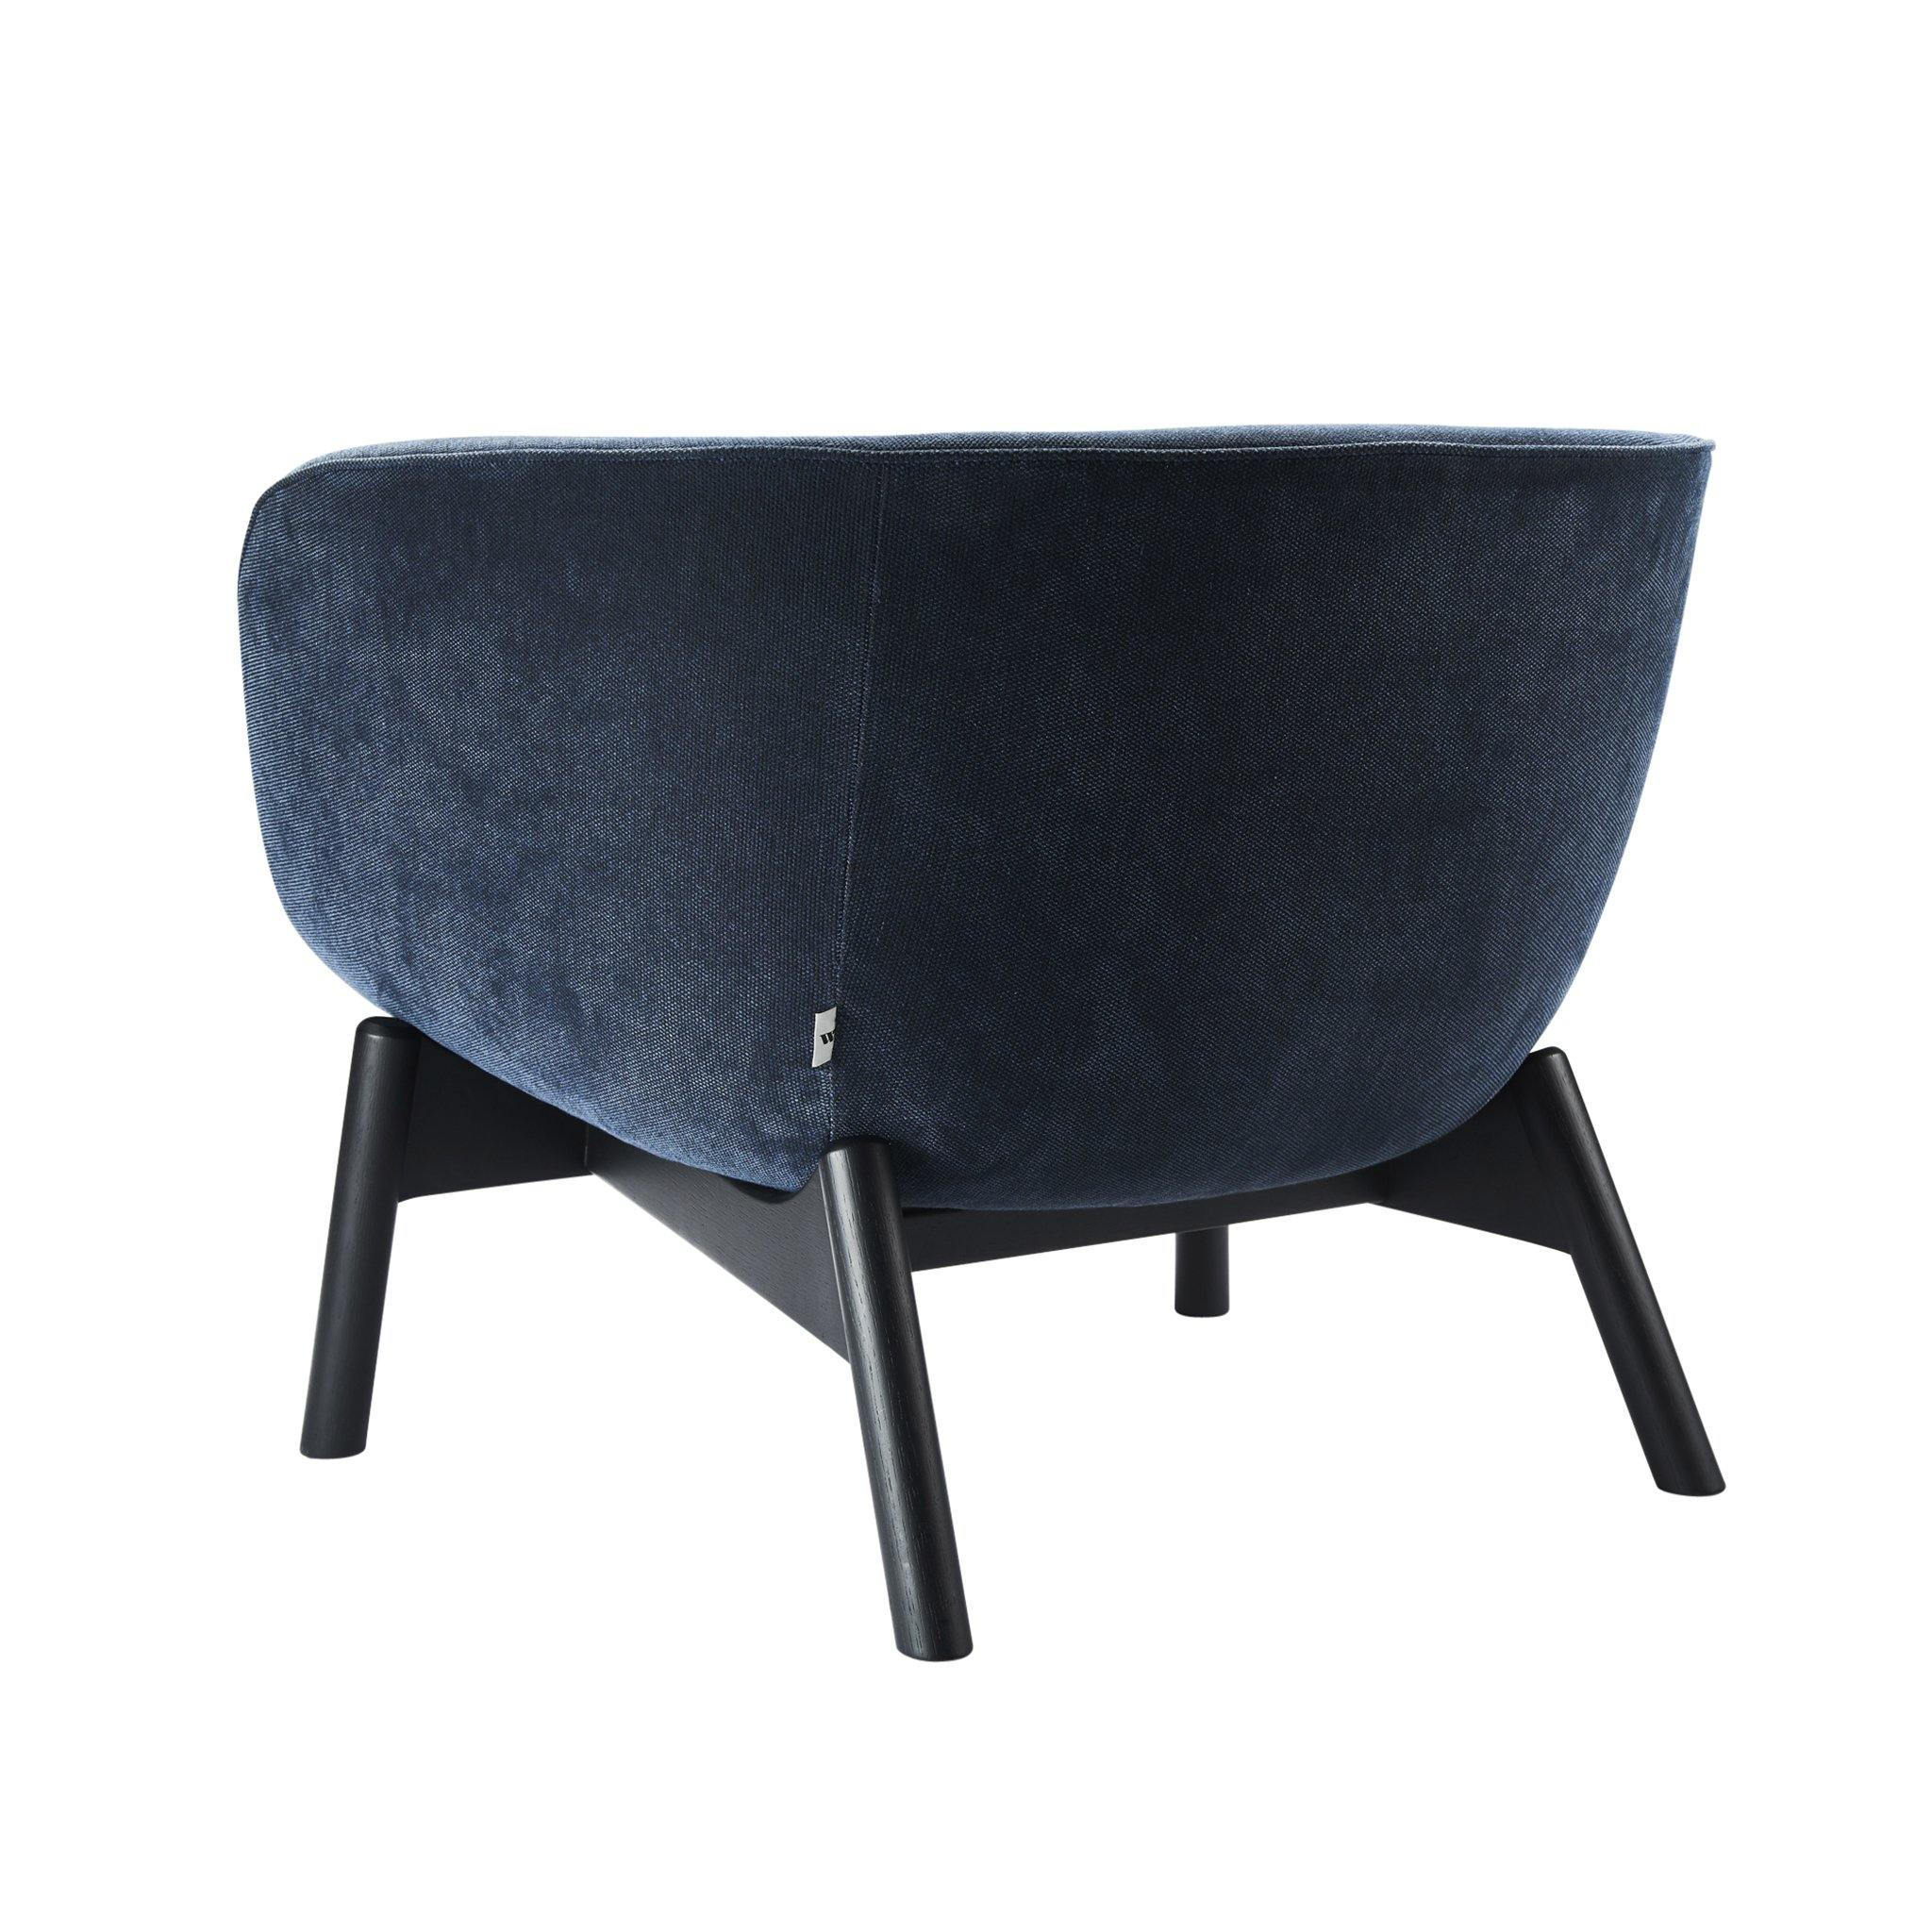 VISTA - Lounge Chair - POET SDN BHD 